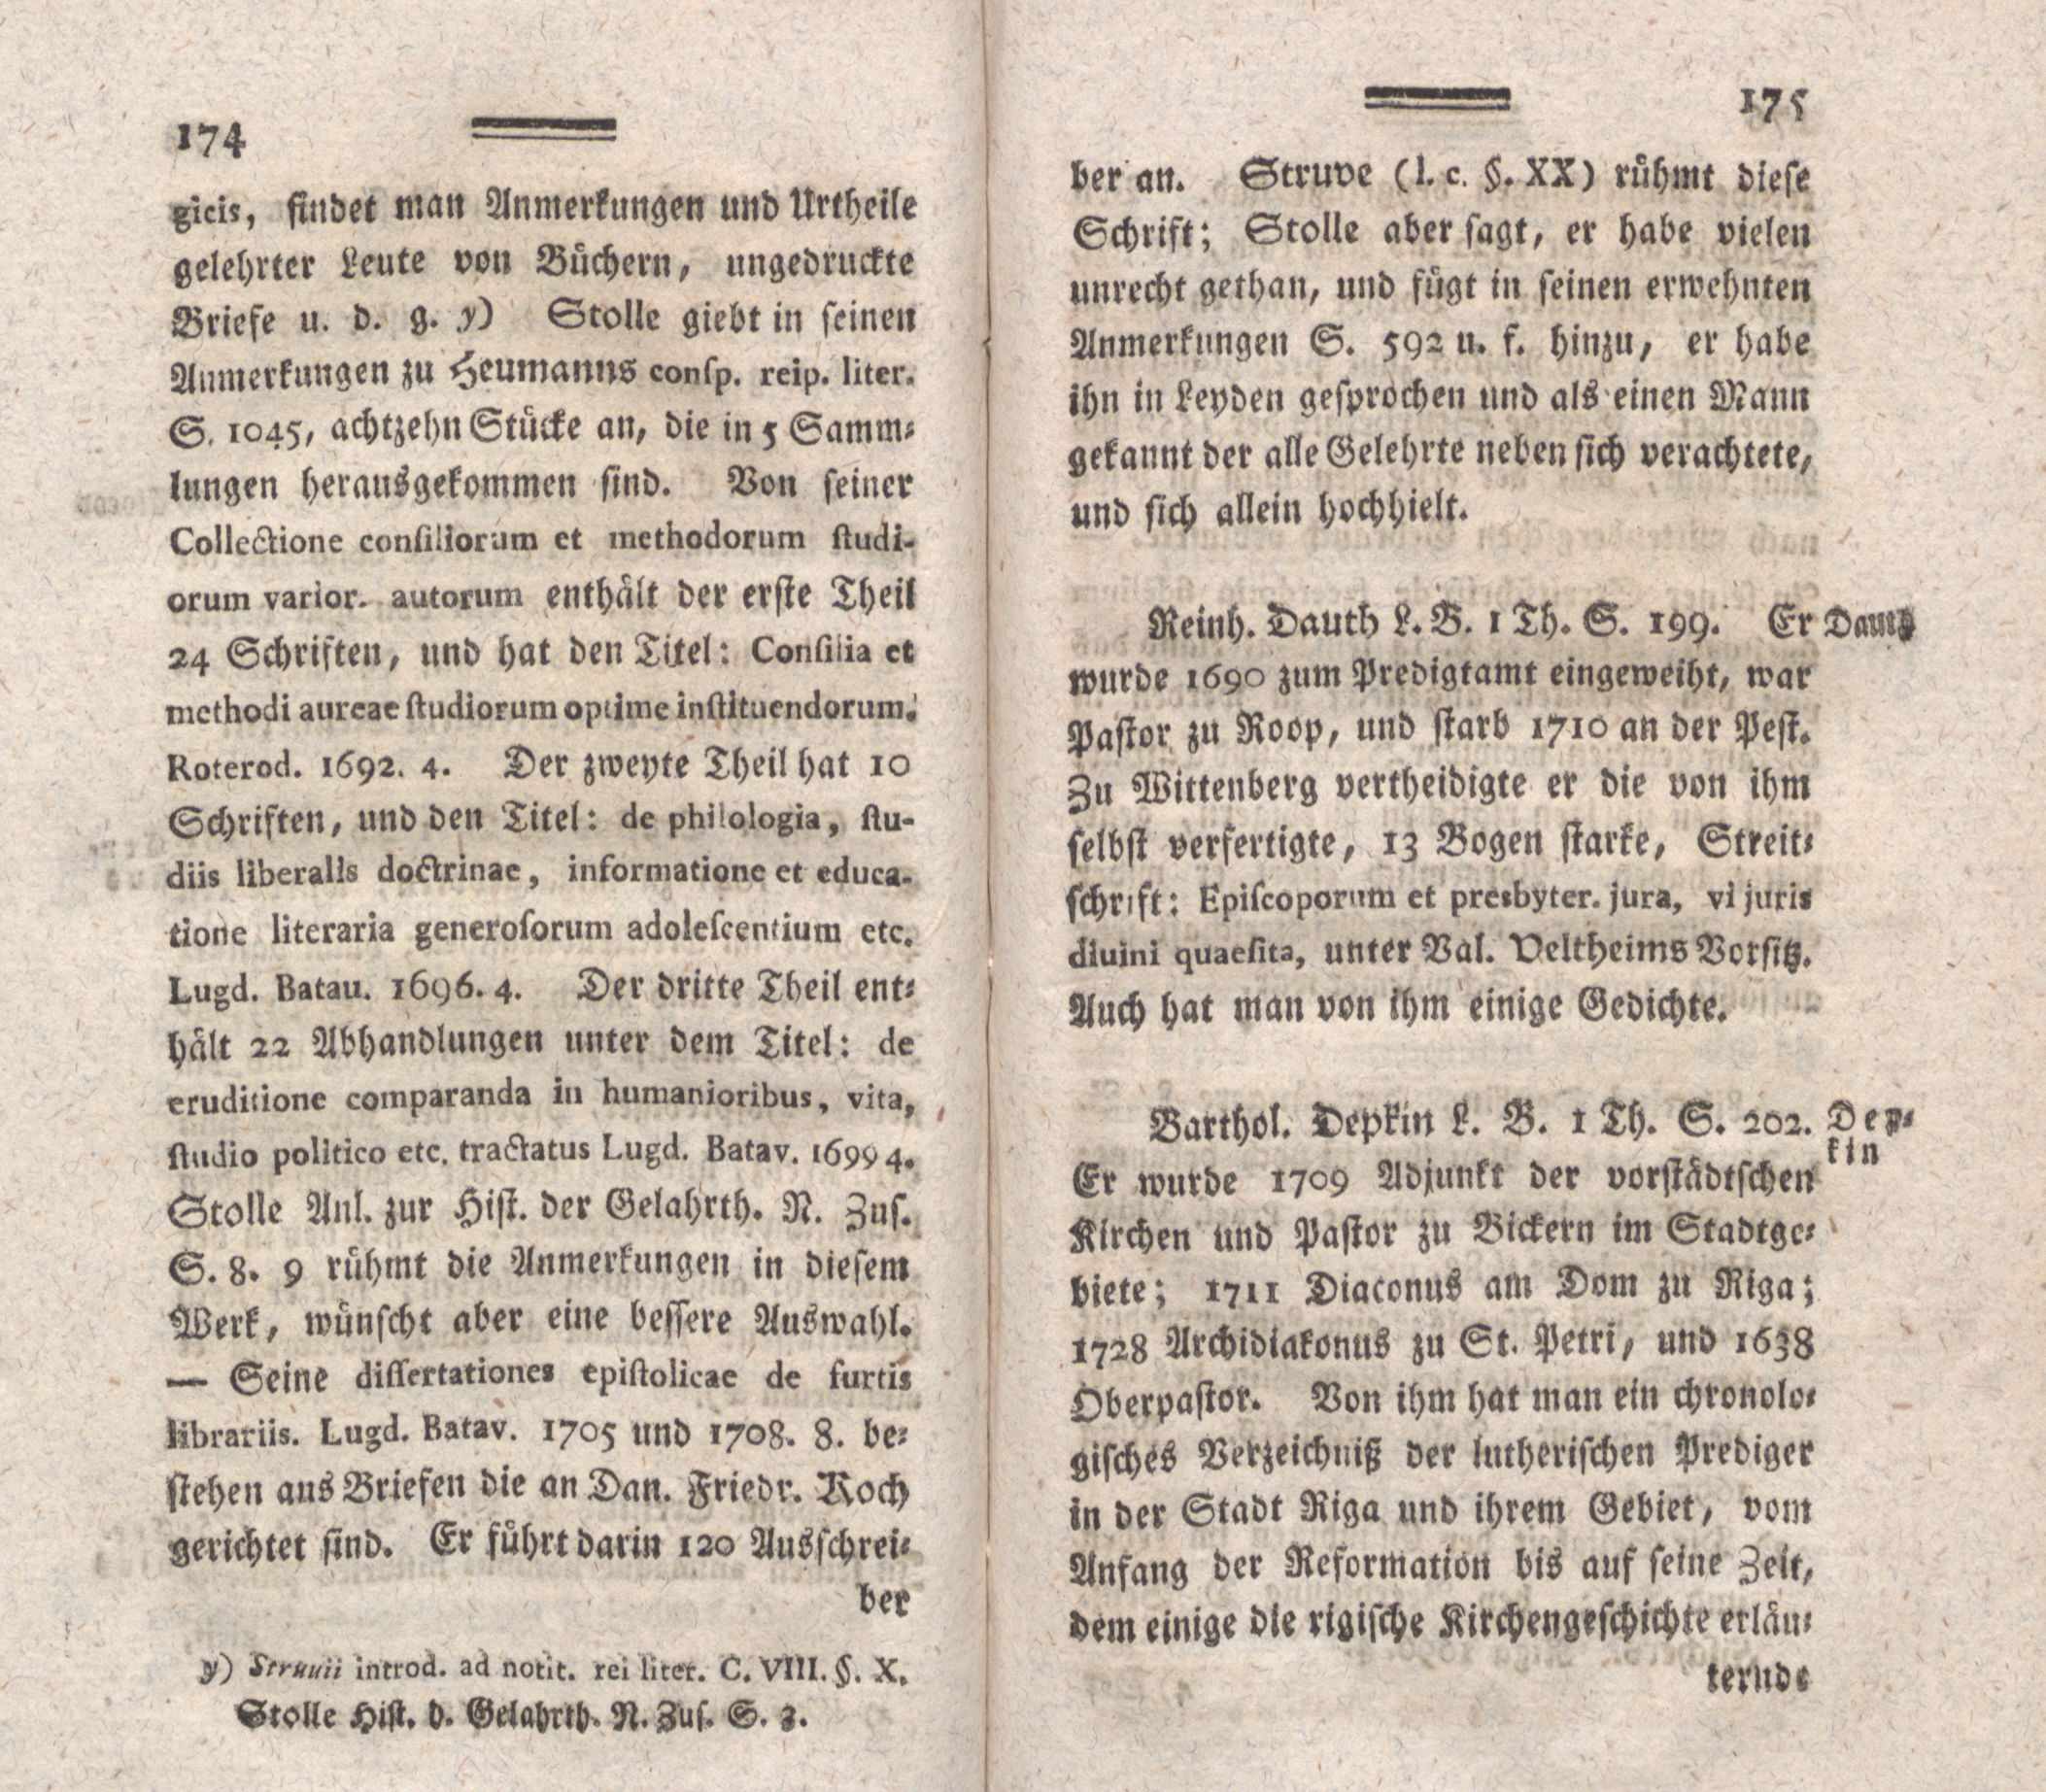 Nordische Miscellaneen [04] (1782) | 89. (174-175) Main body of text